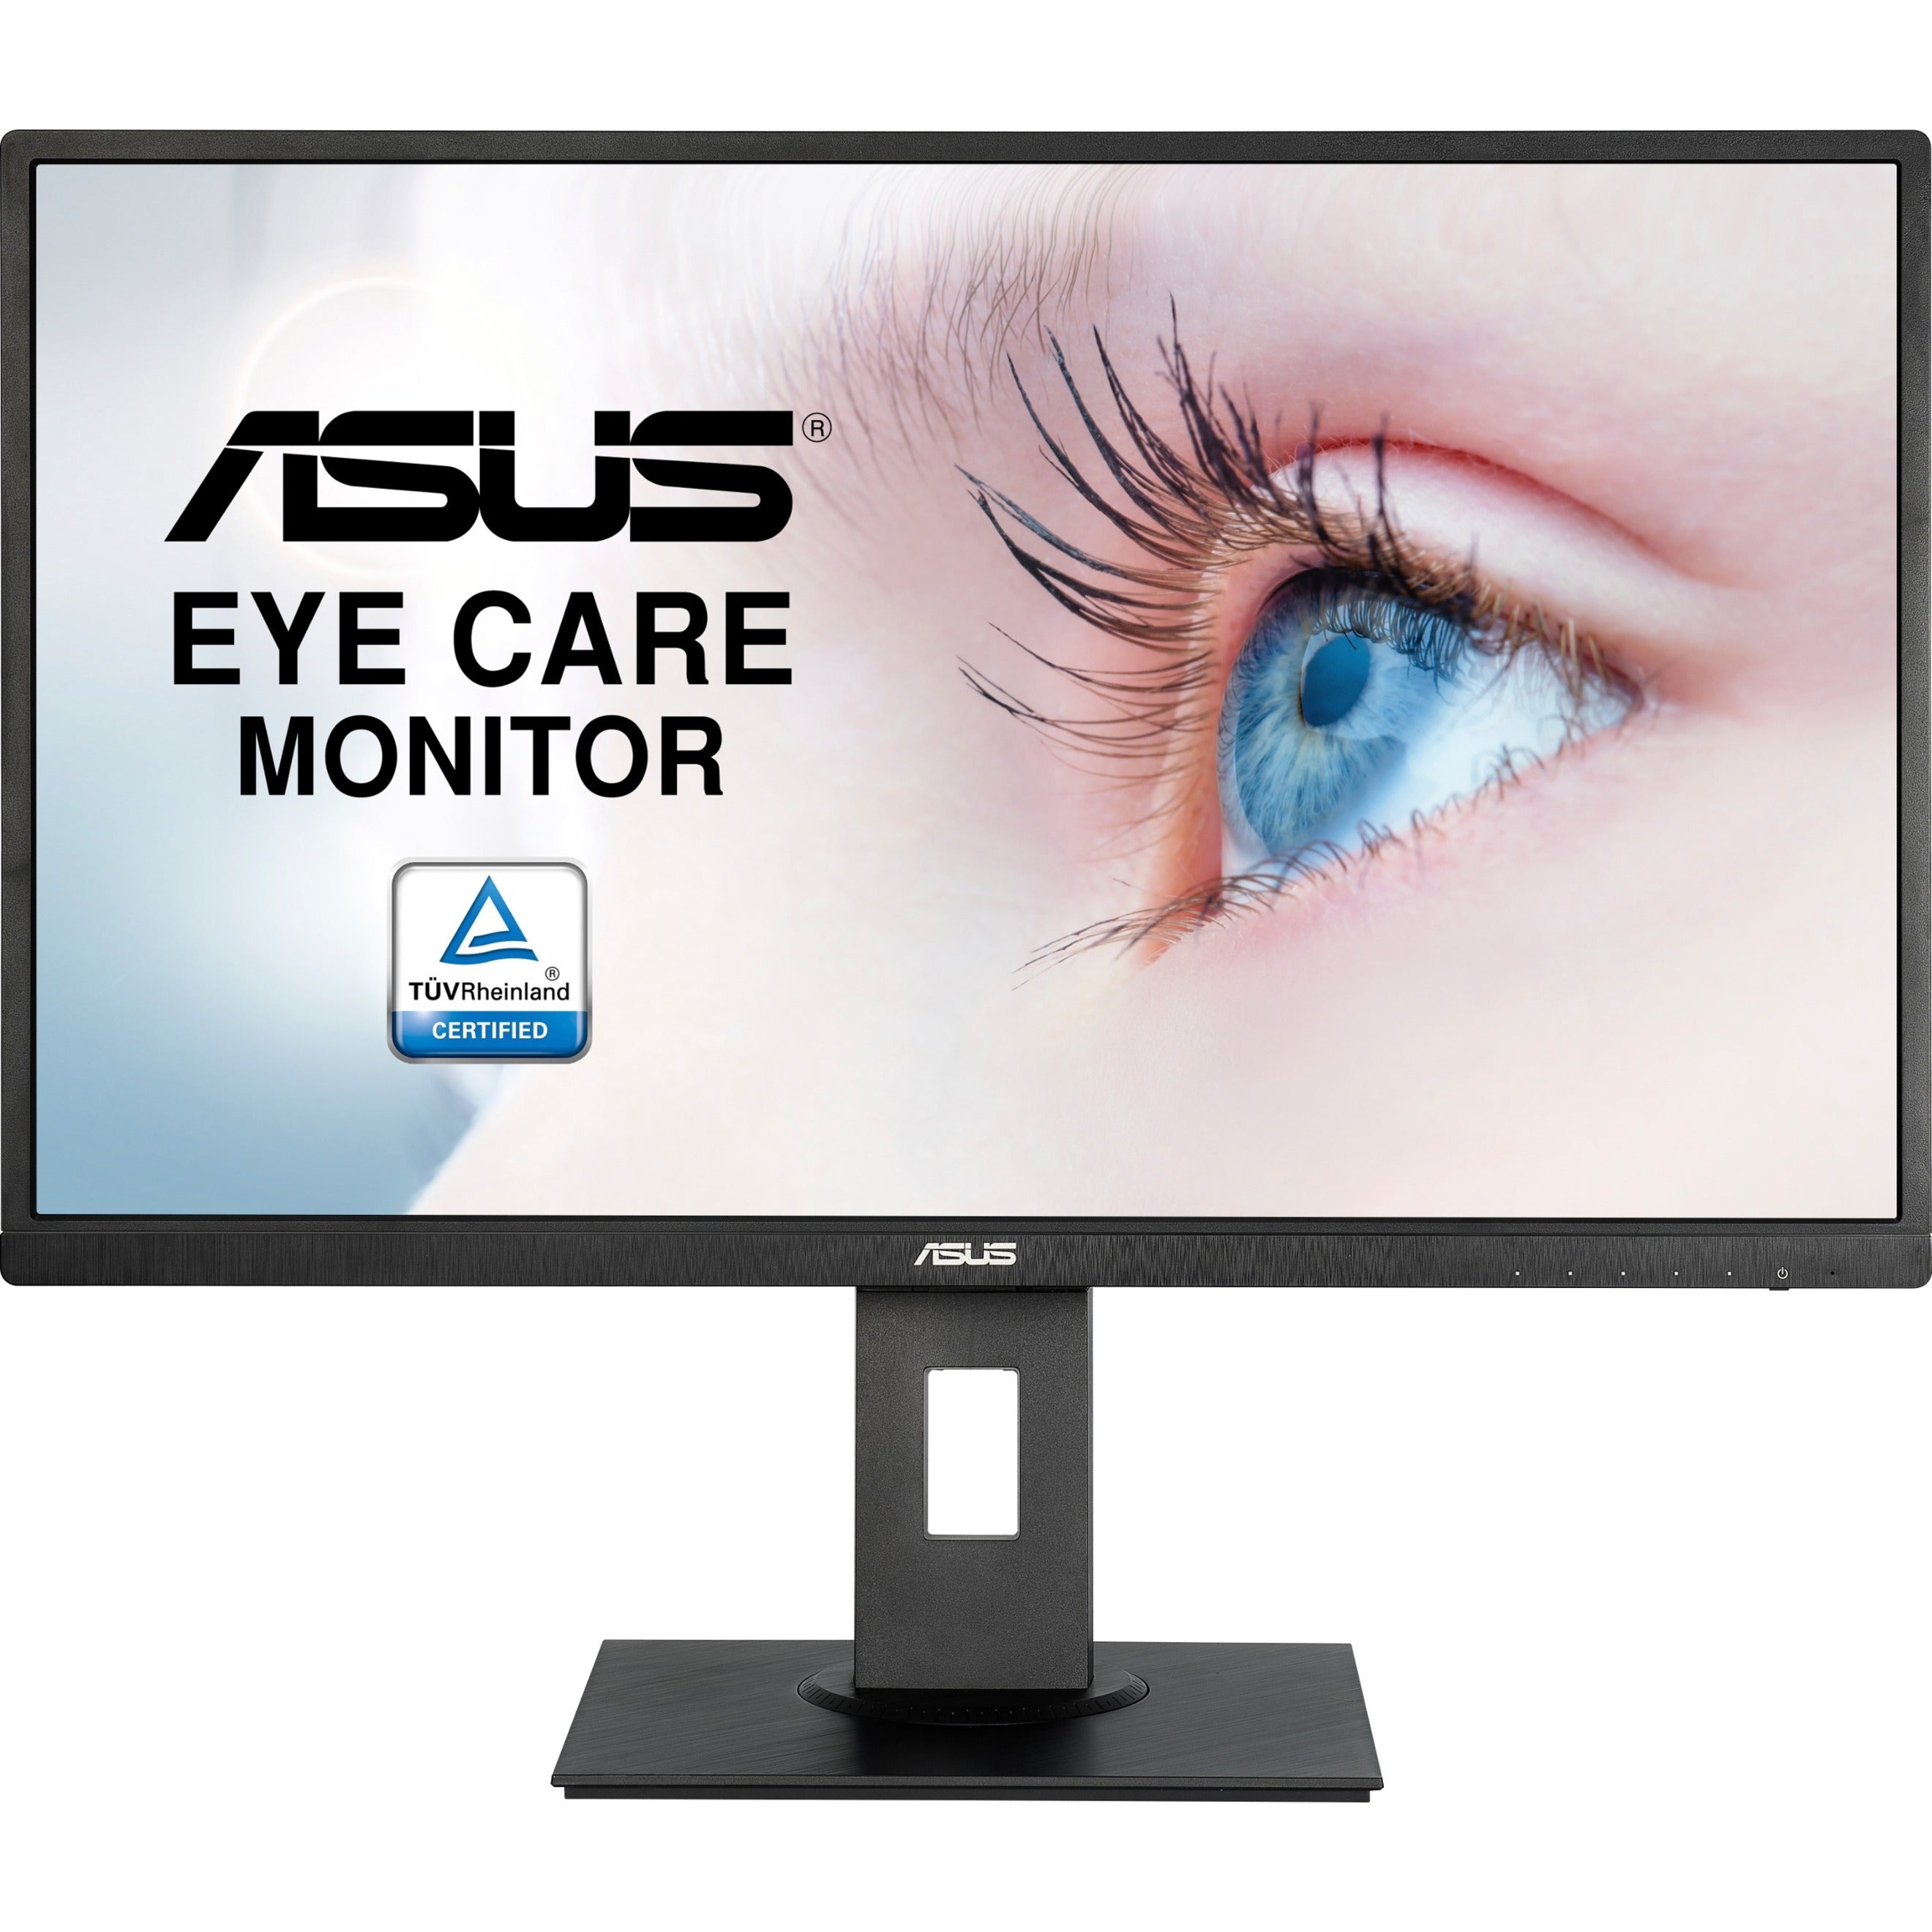 Asus VA279HAE Widescreen LCD Monitor, 27 Full HD, 300 Nit Brightness, 16:9 Aspect Ratio, Black